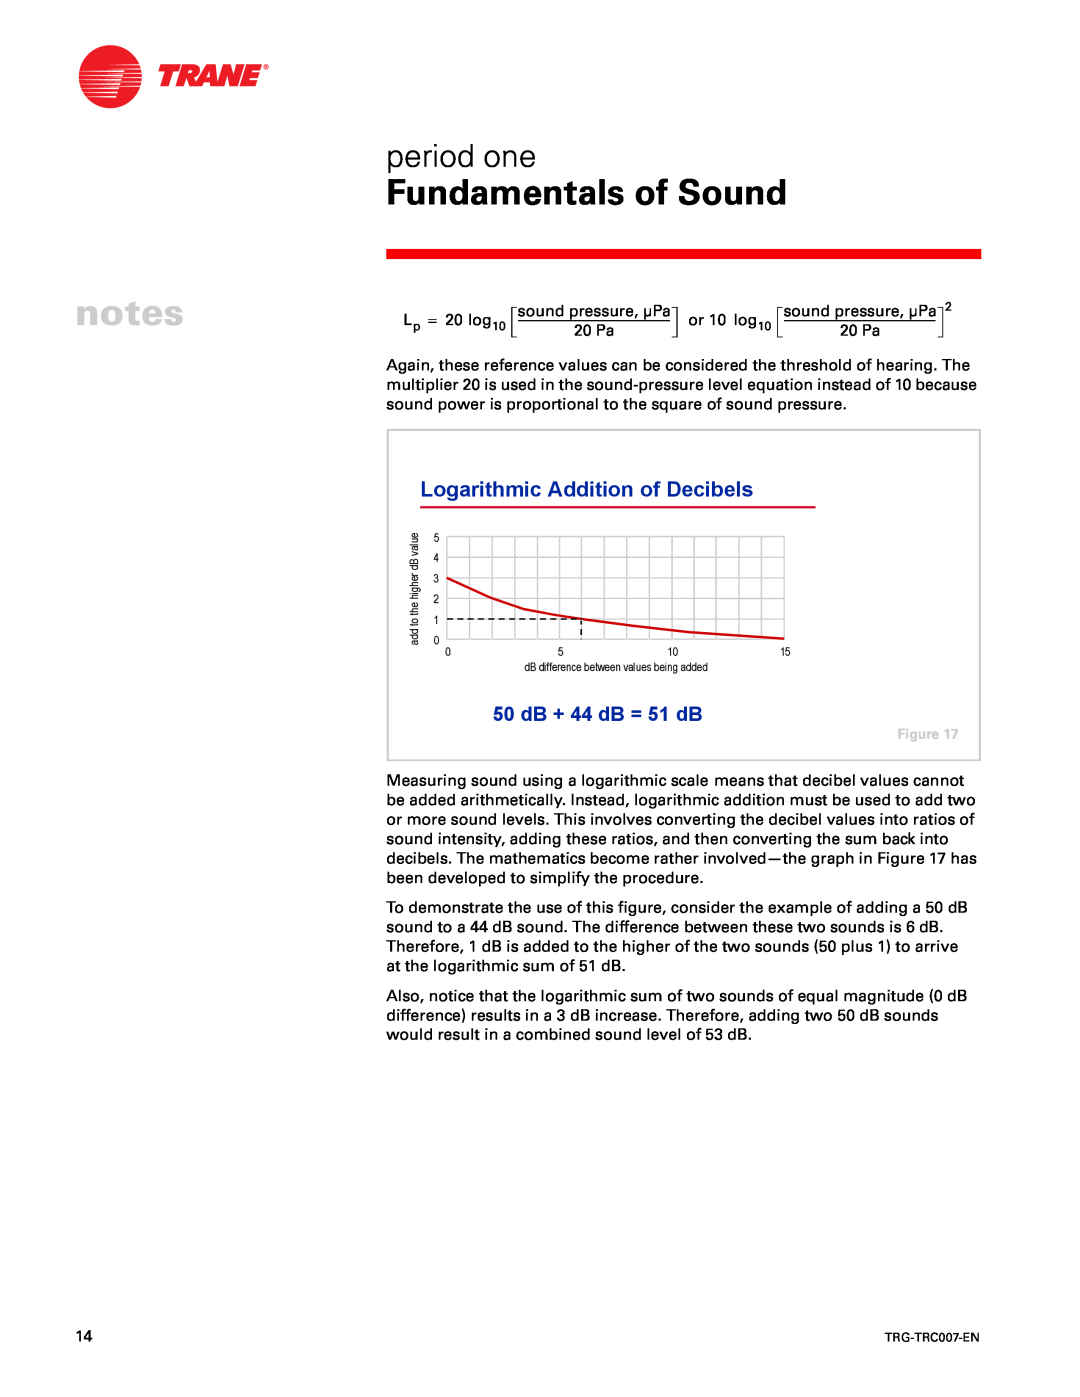 Trane TRG-TRC007-EN manual Logarithmic Addition of Decibels, 50 dB + 44 dB = 51 dB, Fundamentals of Sound, period one 